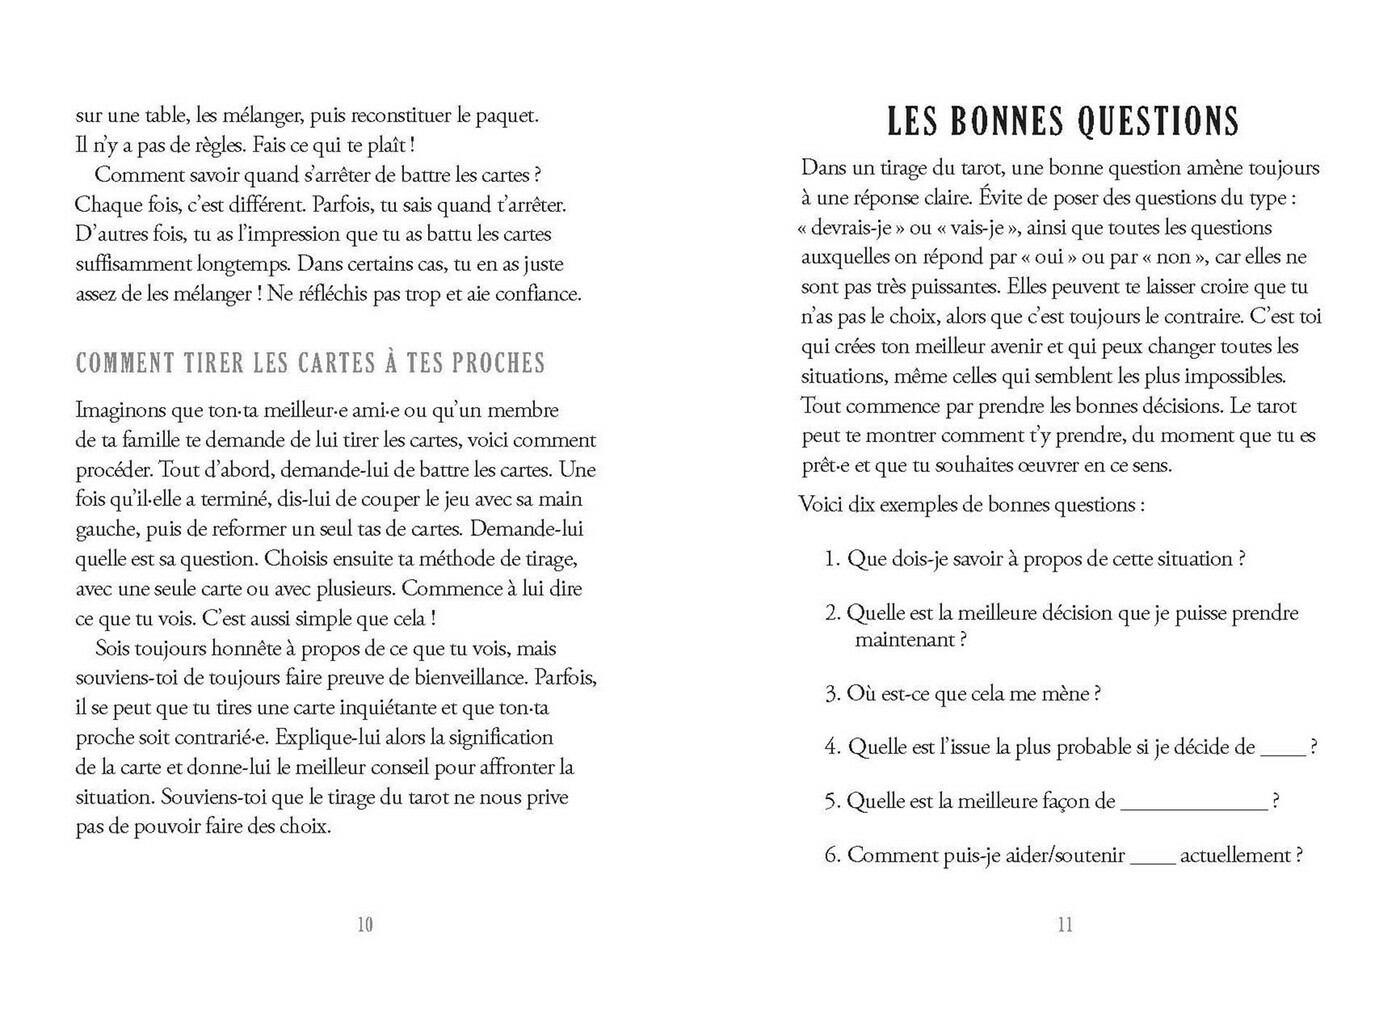 Mon premier livre de tarot (French Edition)